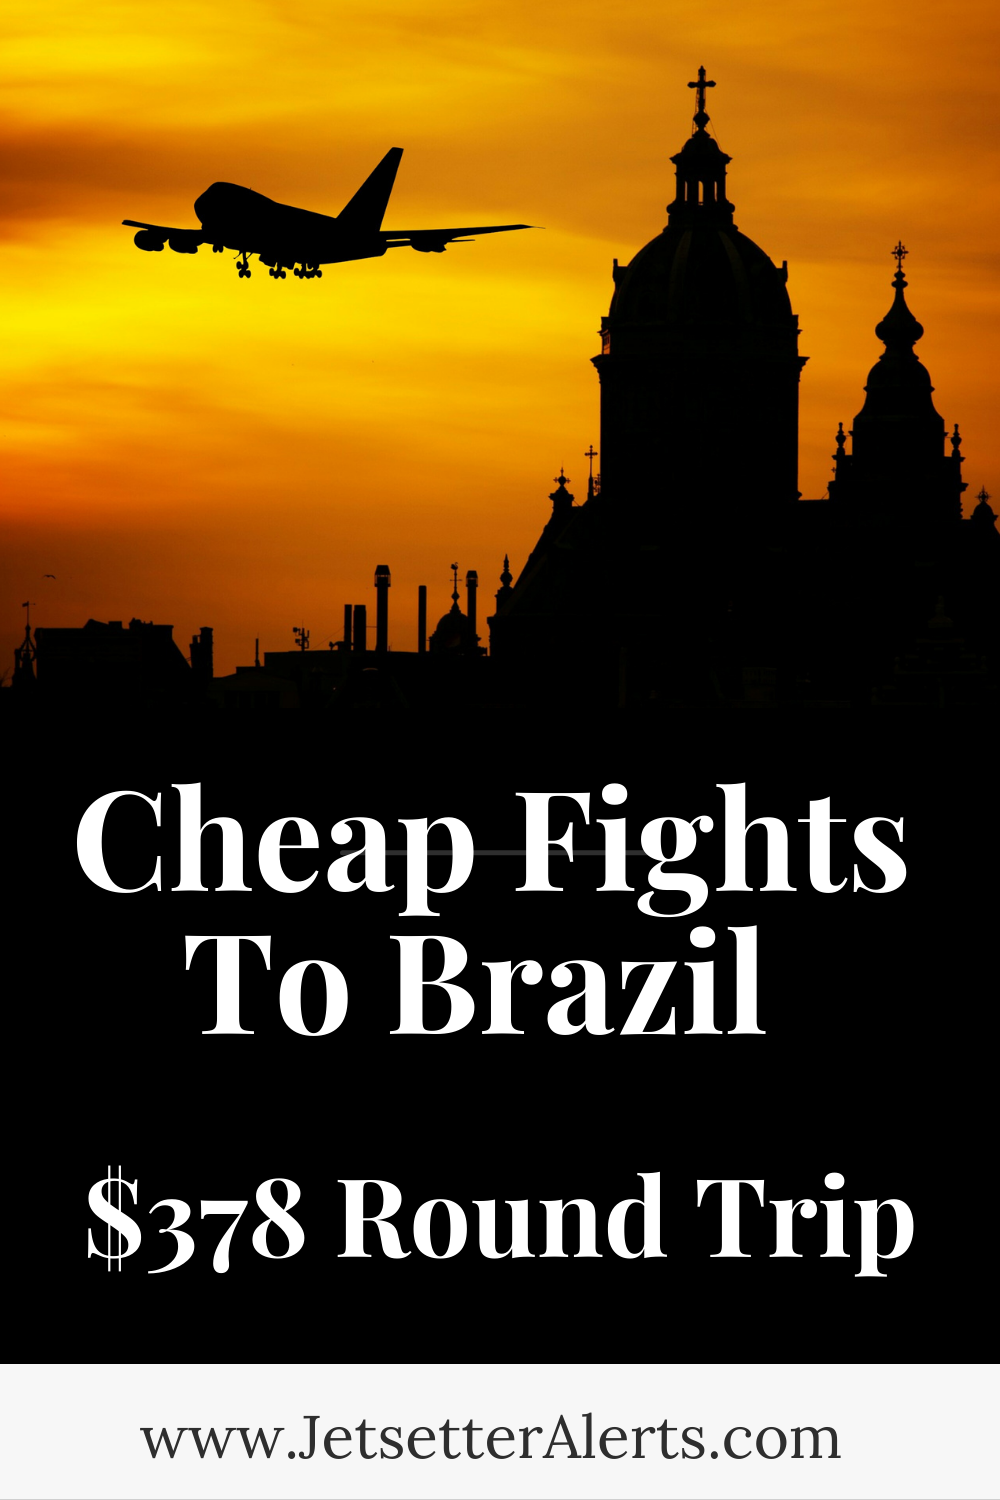 Cheap Flights To São Paulo Brazil For $378 Round Trip